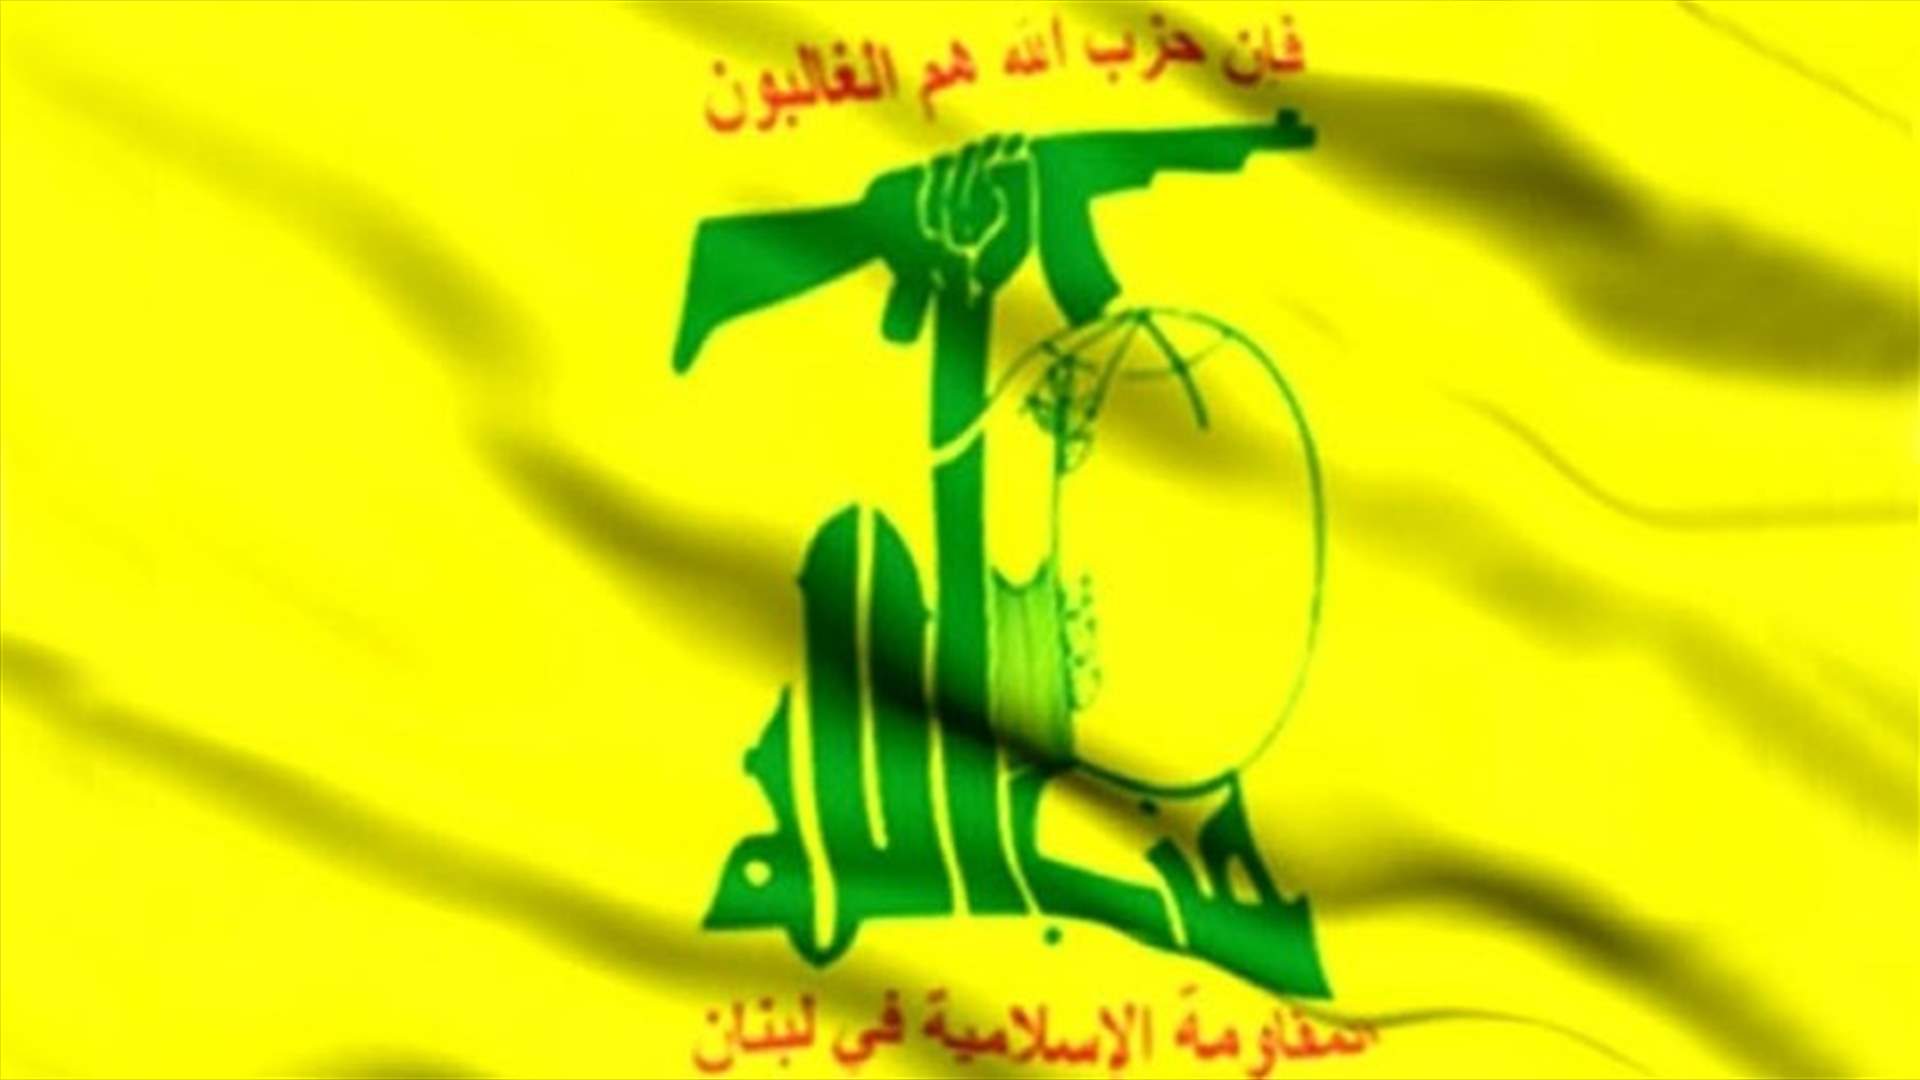 حزب الله: قرار الكنيست الإسرائيلي هدفه حرمان الفلسطينيين من العودة إلى أرضهم